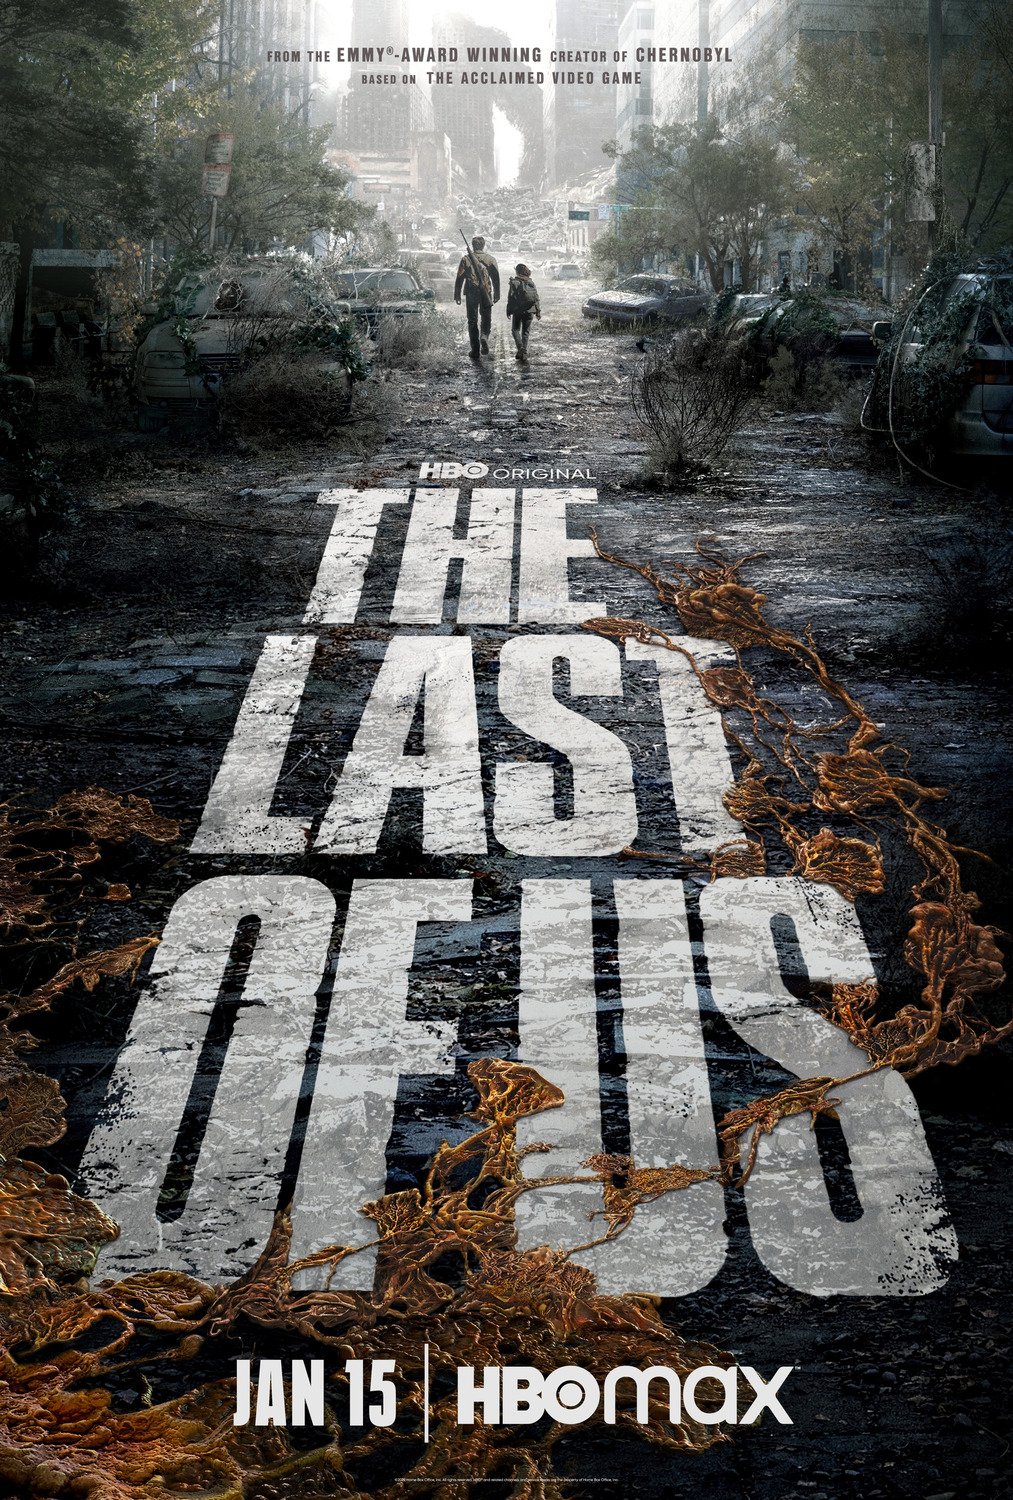  O que assistir depois de “The Last of Us”?